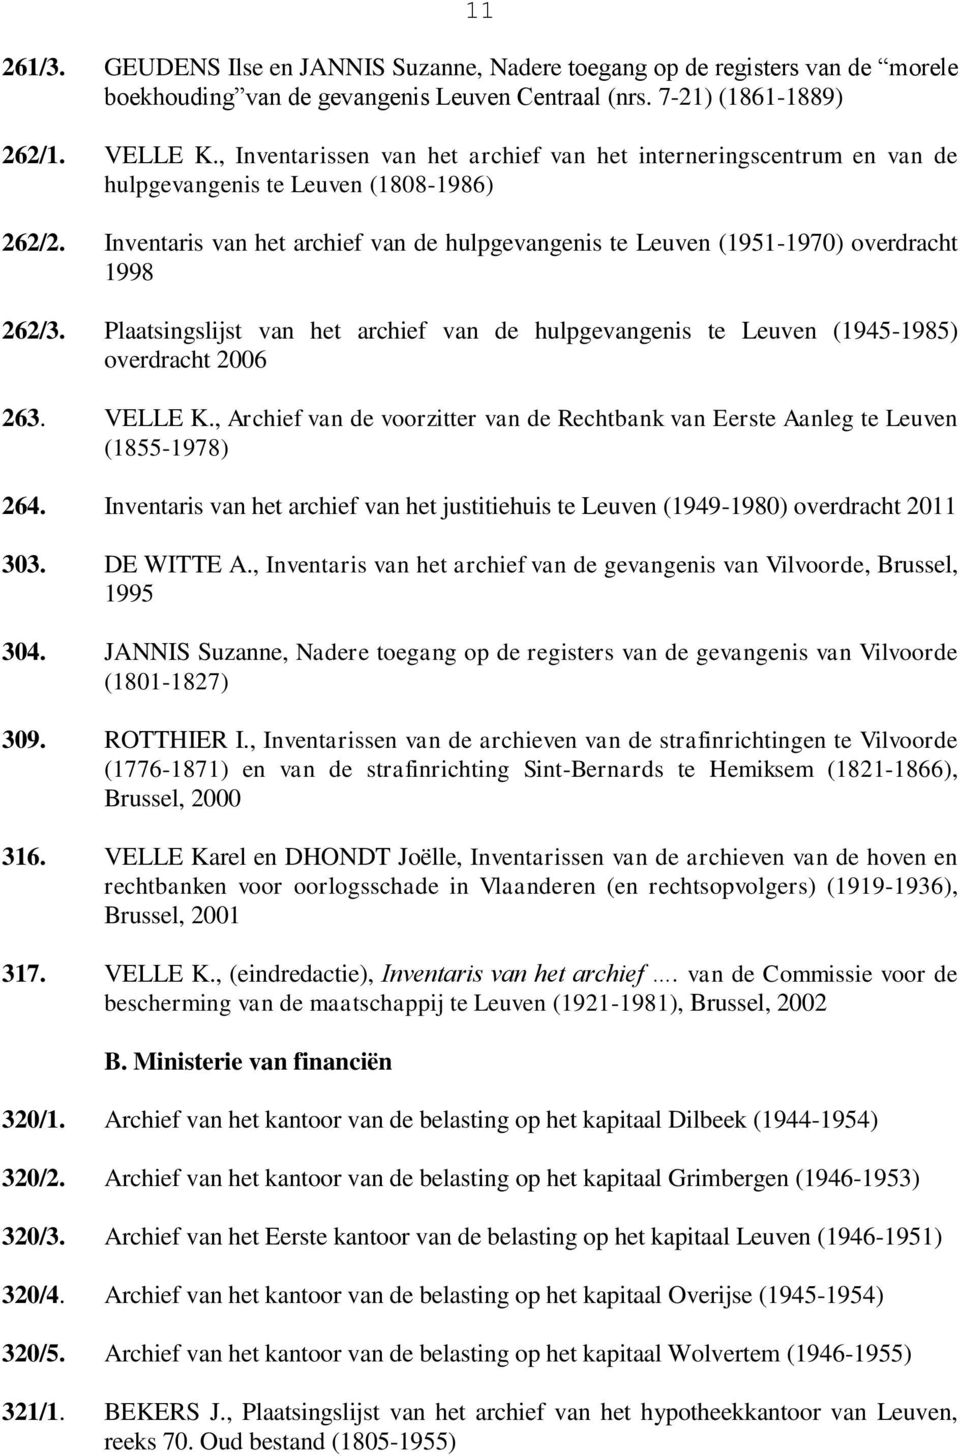 Inventaris van het archief van de hulpgevangenis te Leuven (1951-1970) overdracht 1998 262/3. Plaatsingslijst van het archief van de hulpgevangenis te Leuven (1945-1985) overdracht 2006 263. VELLE K.